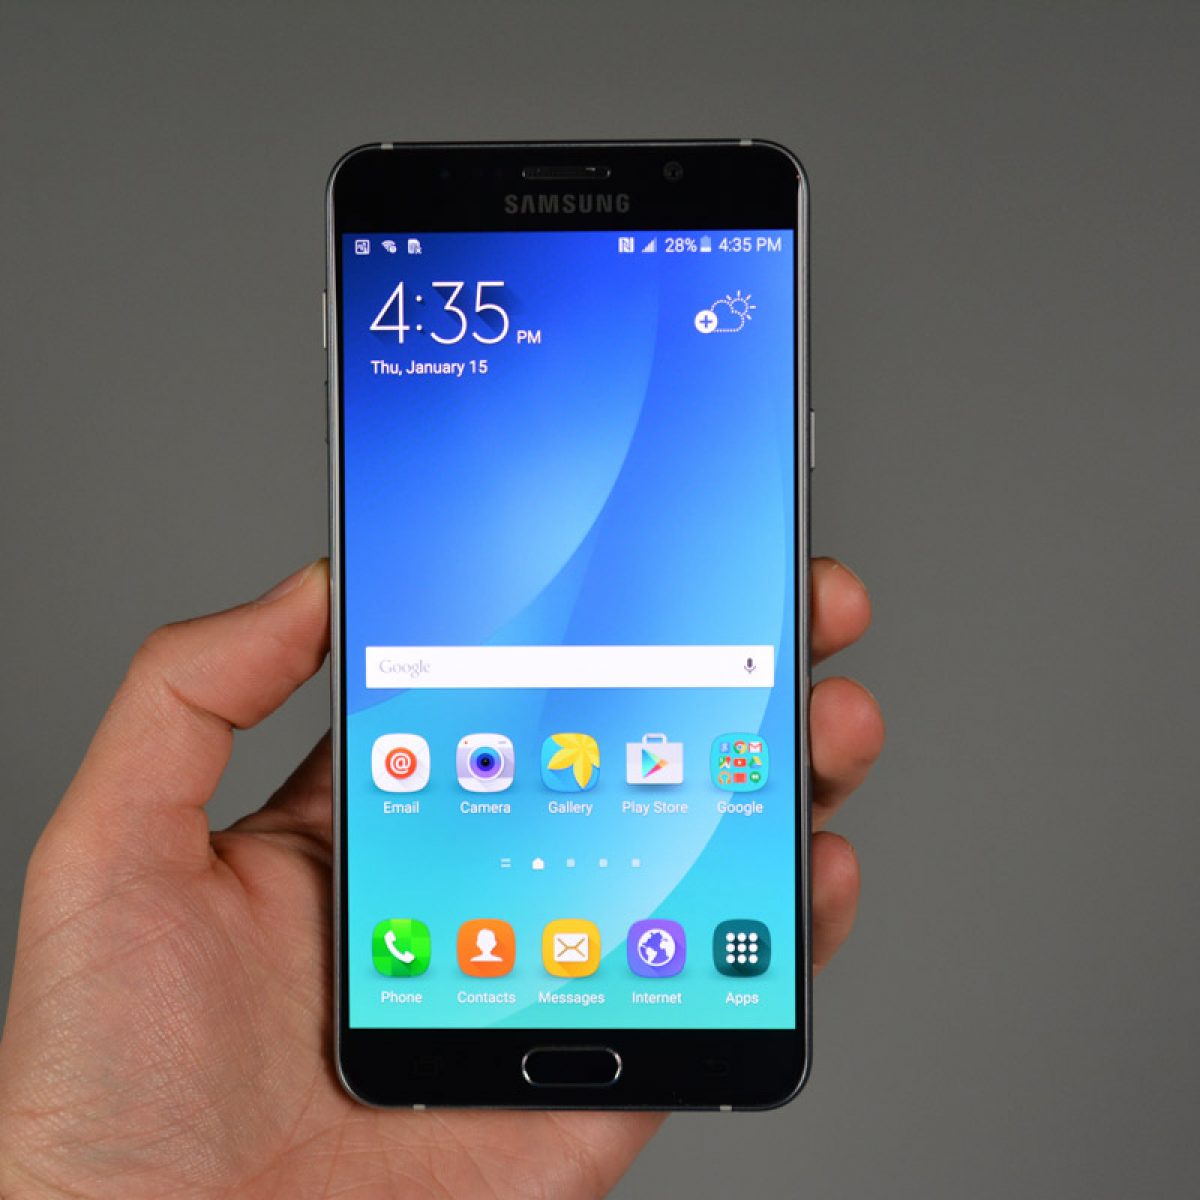 Ik geloof Verfrissend Maak los Samsung Galaxy Note 5 Review